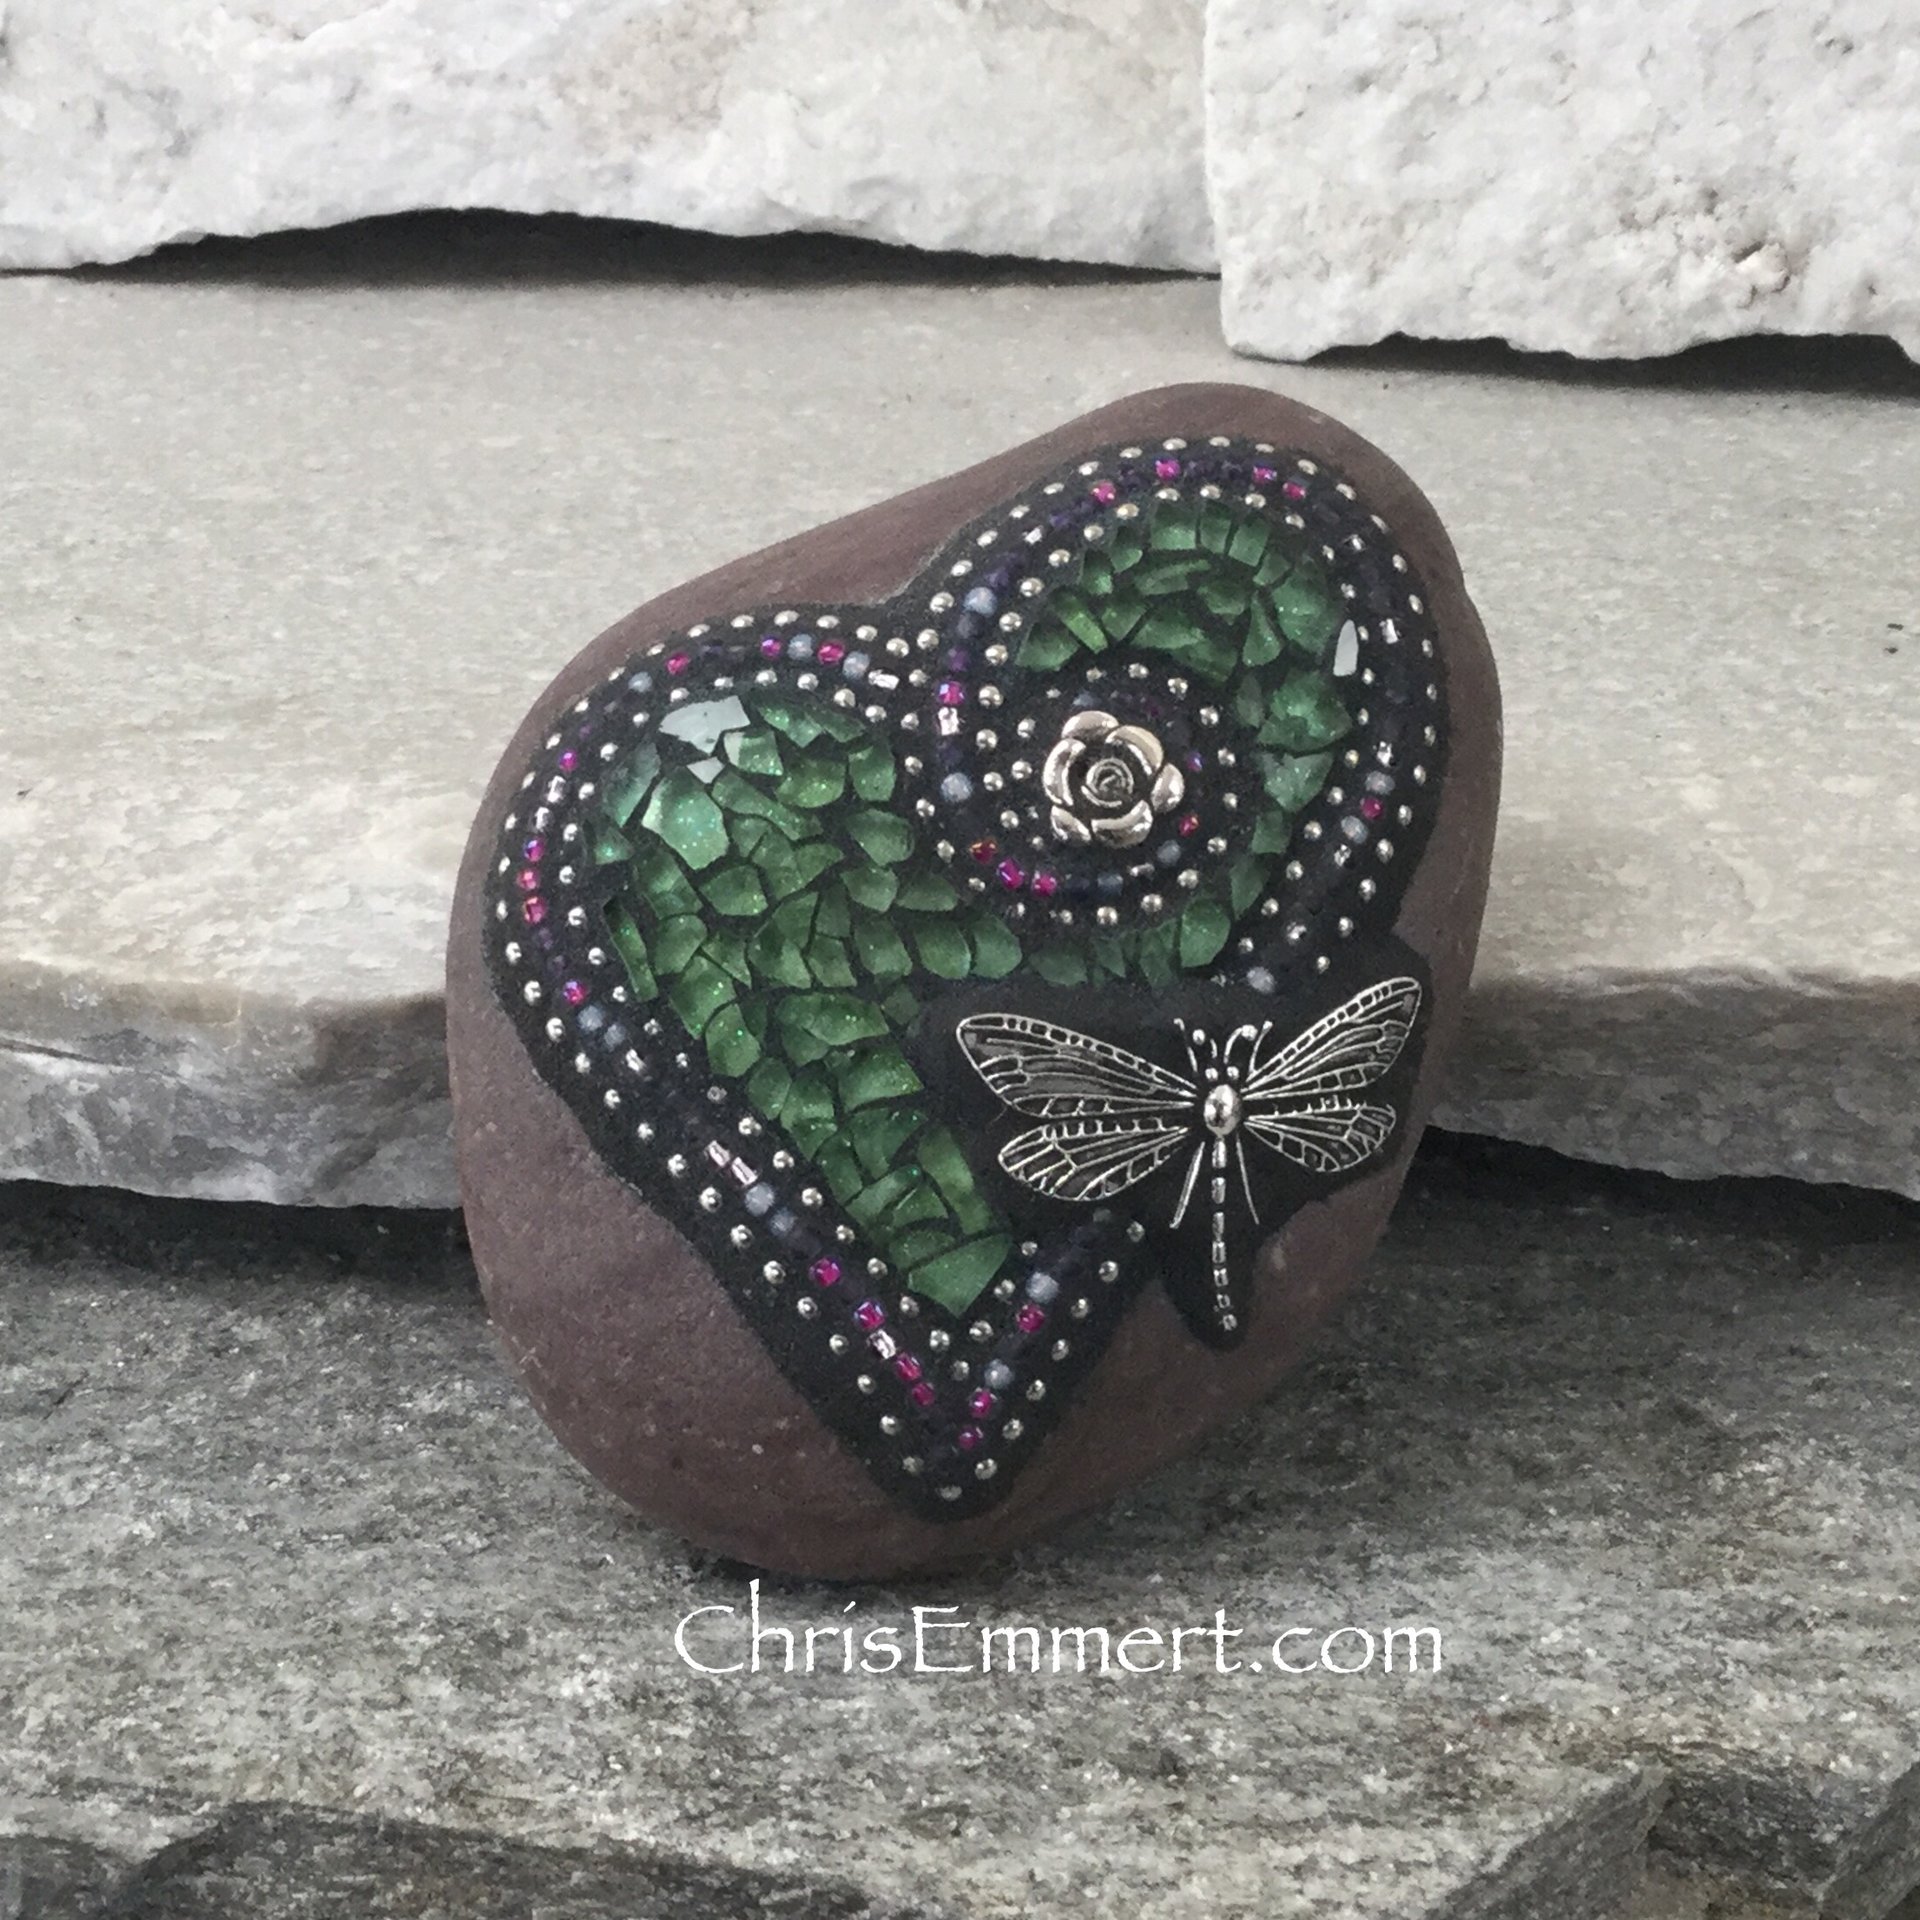 Mosaic Green Heart,  Mosaic Rock, Garden Stone, Home Decor, Gardener Gift, Garden Decor,